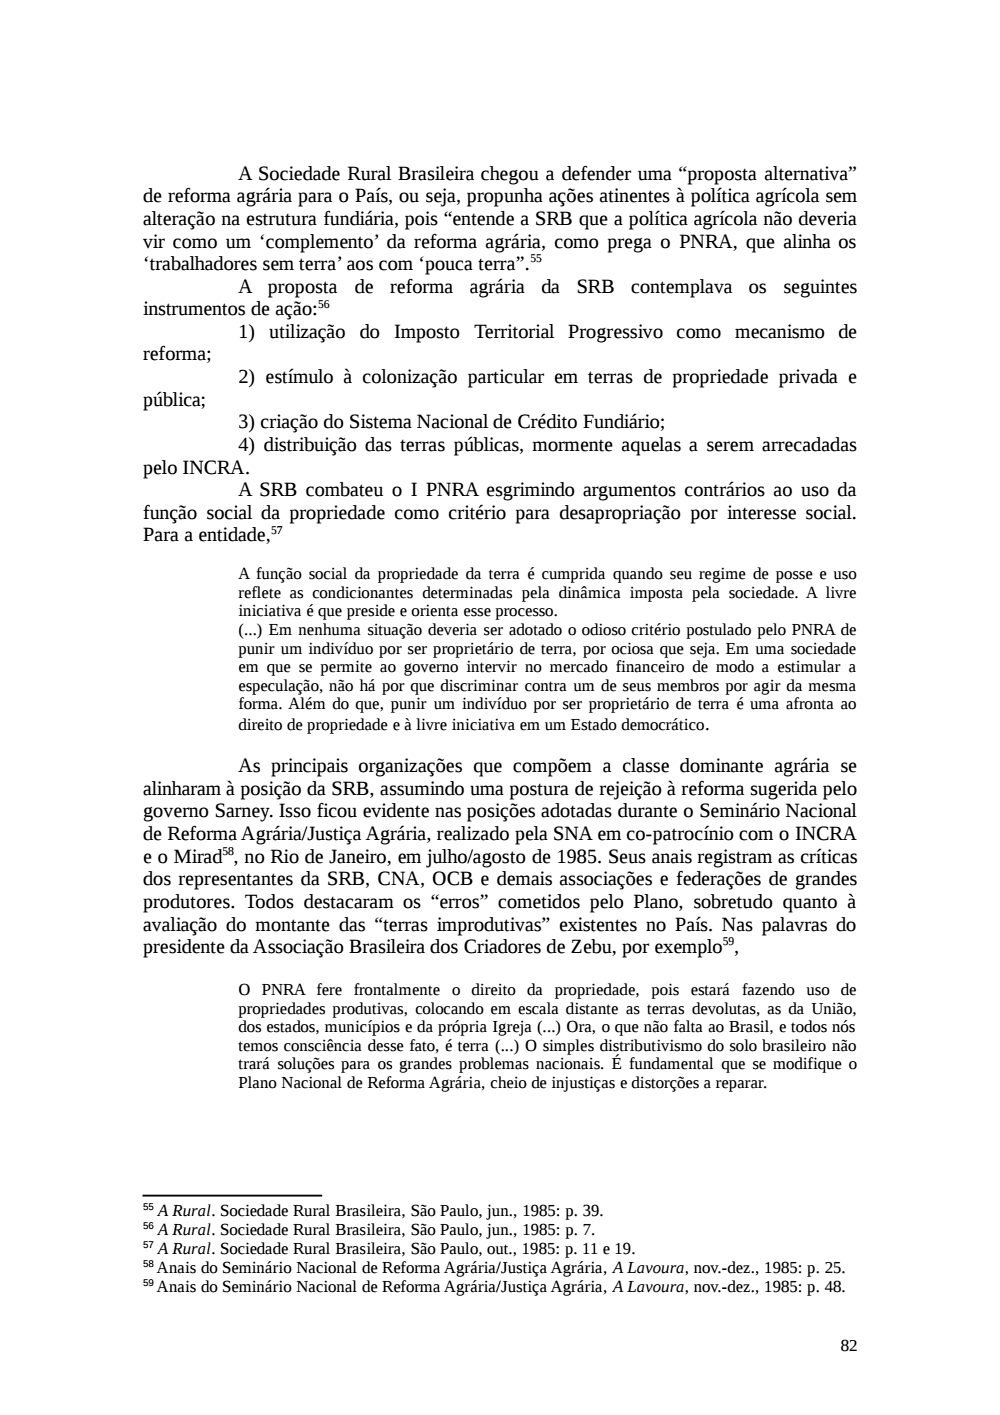 Page 82 from Relatório final da comissão